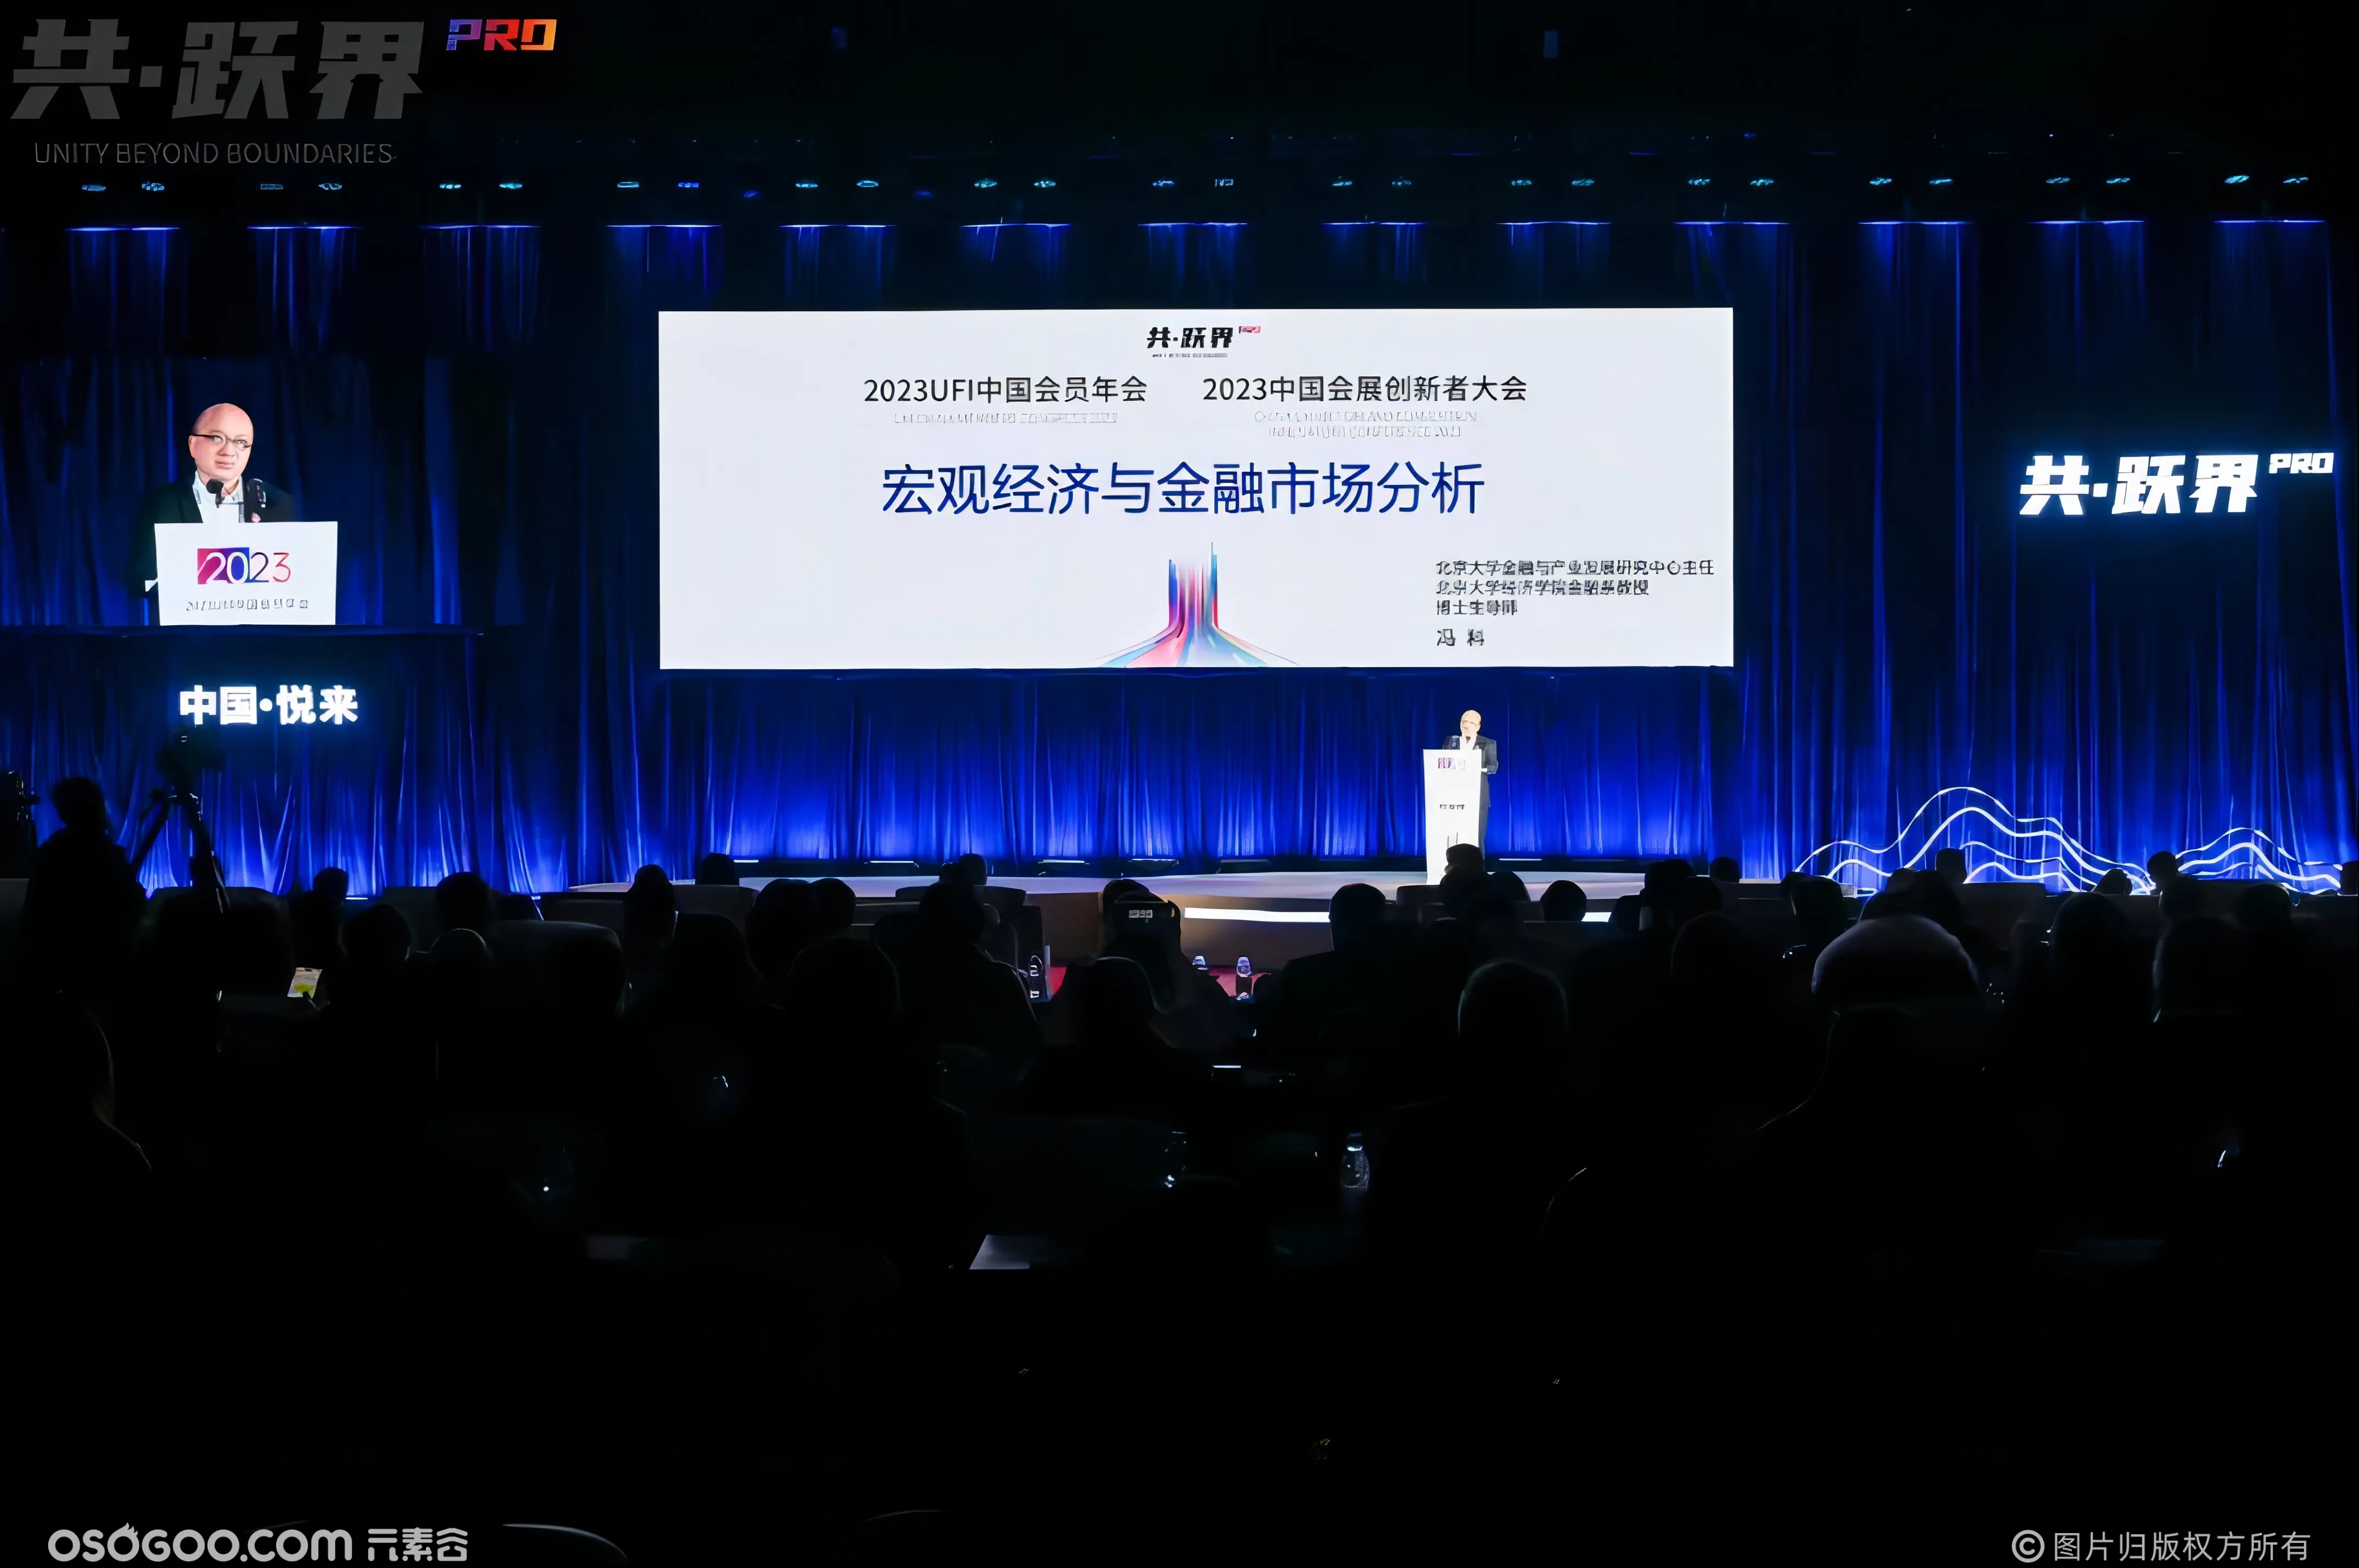 2023UFI中国会员年会、2023中国会展创新者大会在渝启